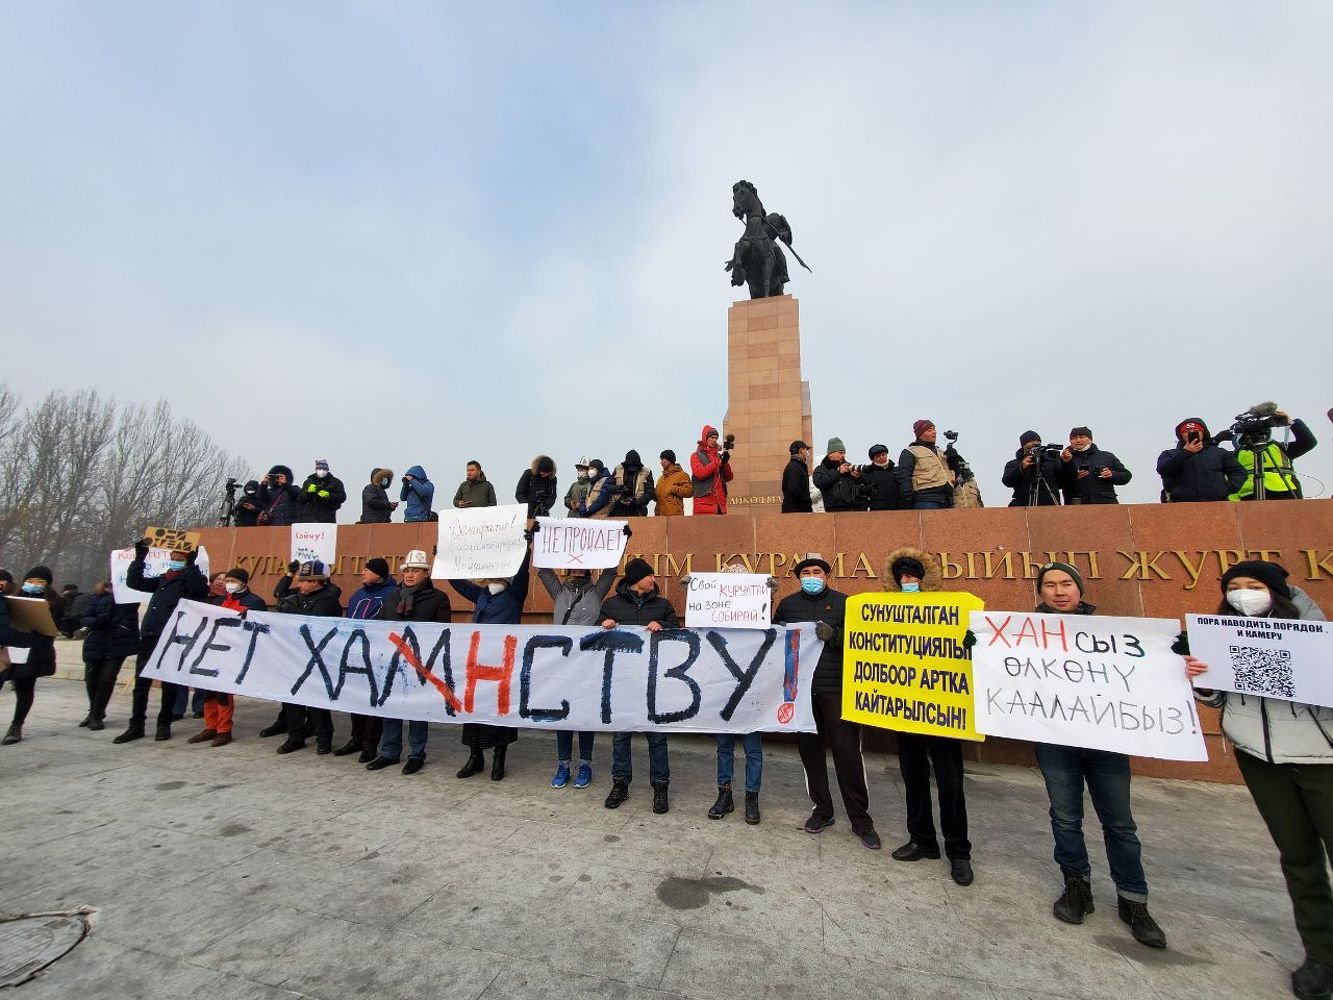 В Бишкеке проходит митинг против нового проекта конституции «Нет Ханституции!» — Today.kg